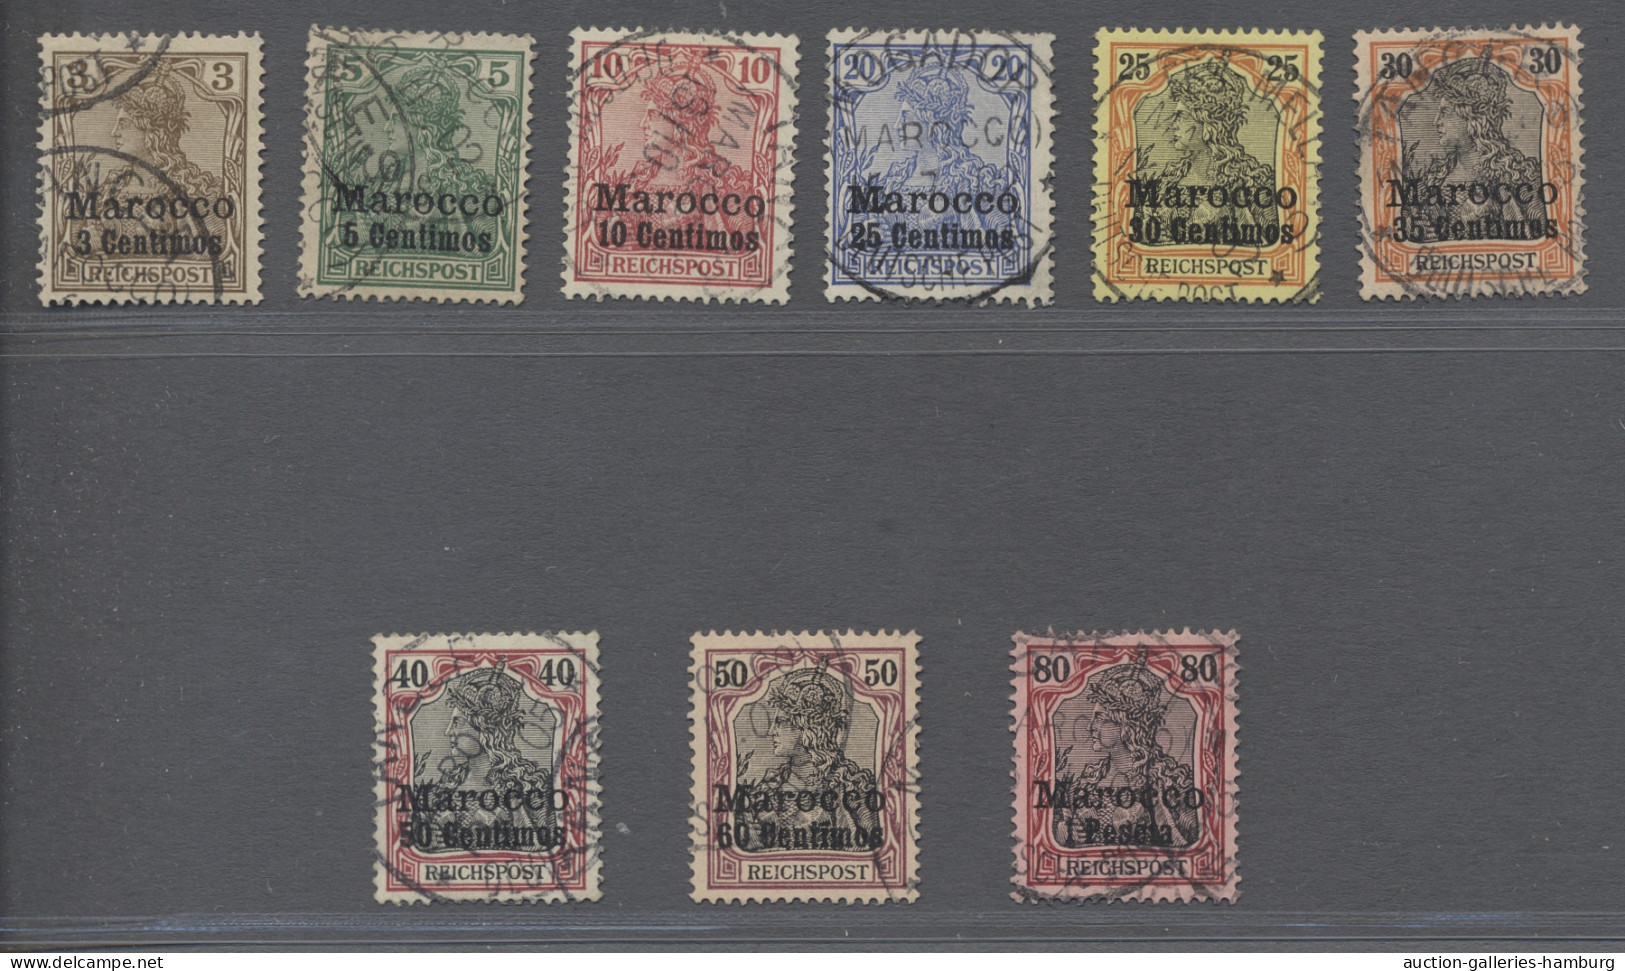 o Deutsche Post in Marokko: 1900, REICHSPOST, der komplette Satz mit neuem Wertauf